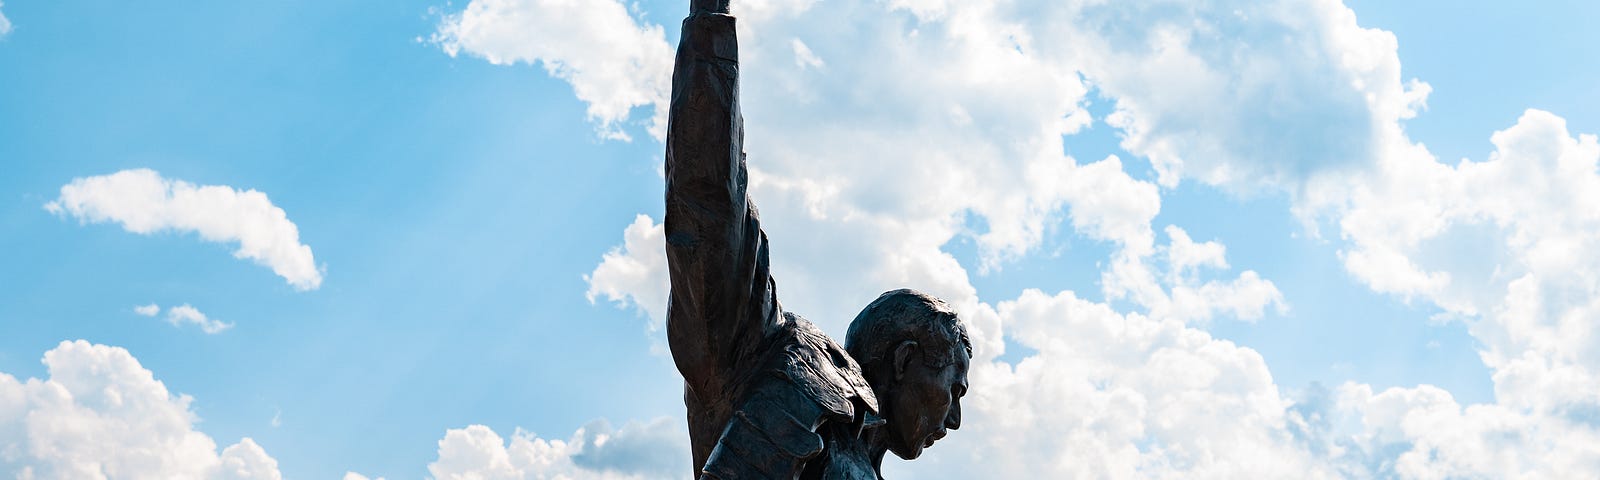 Statue of Freddie Mercury performing